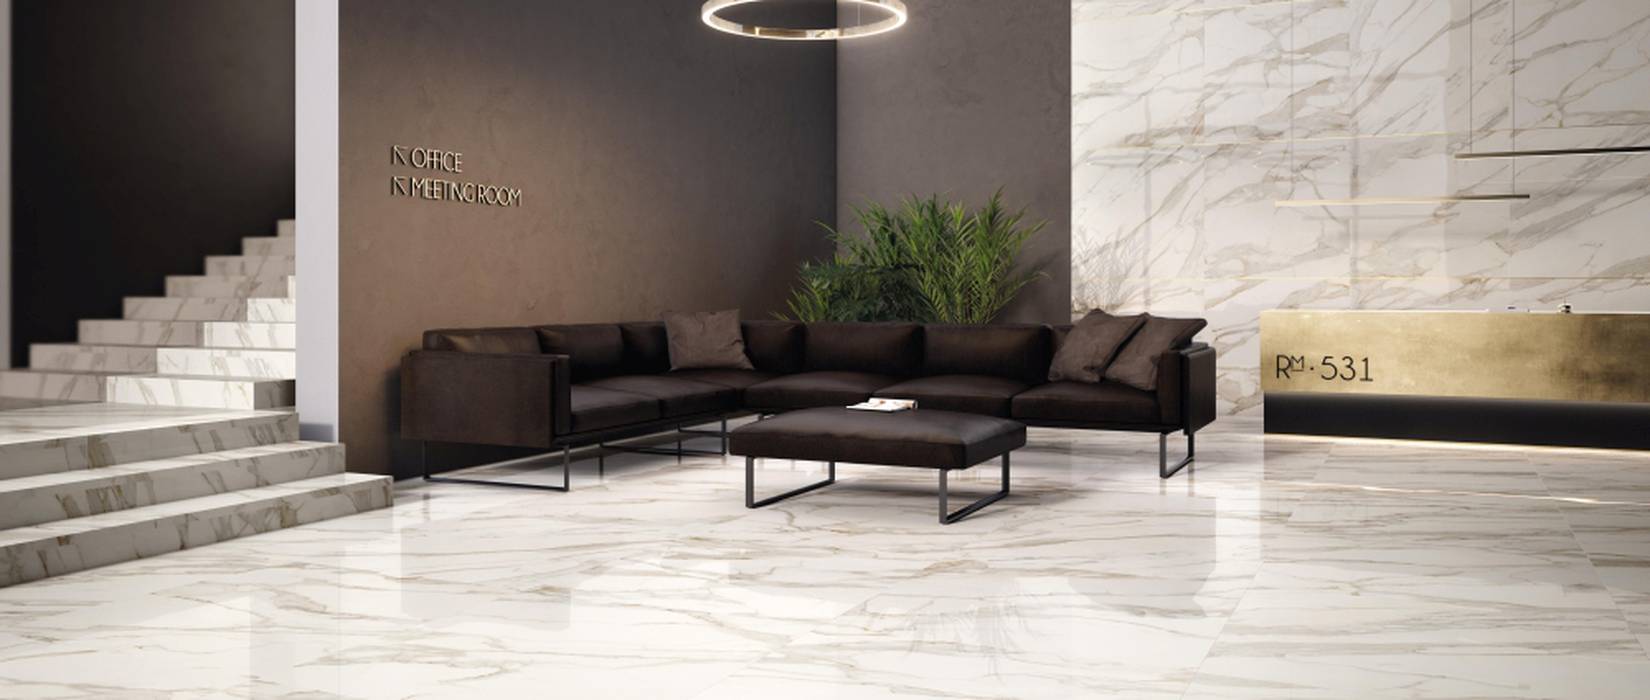 Marble effect floor tiles